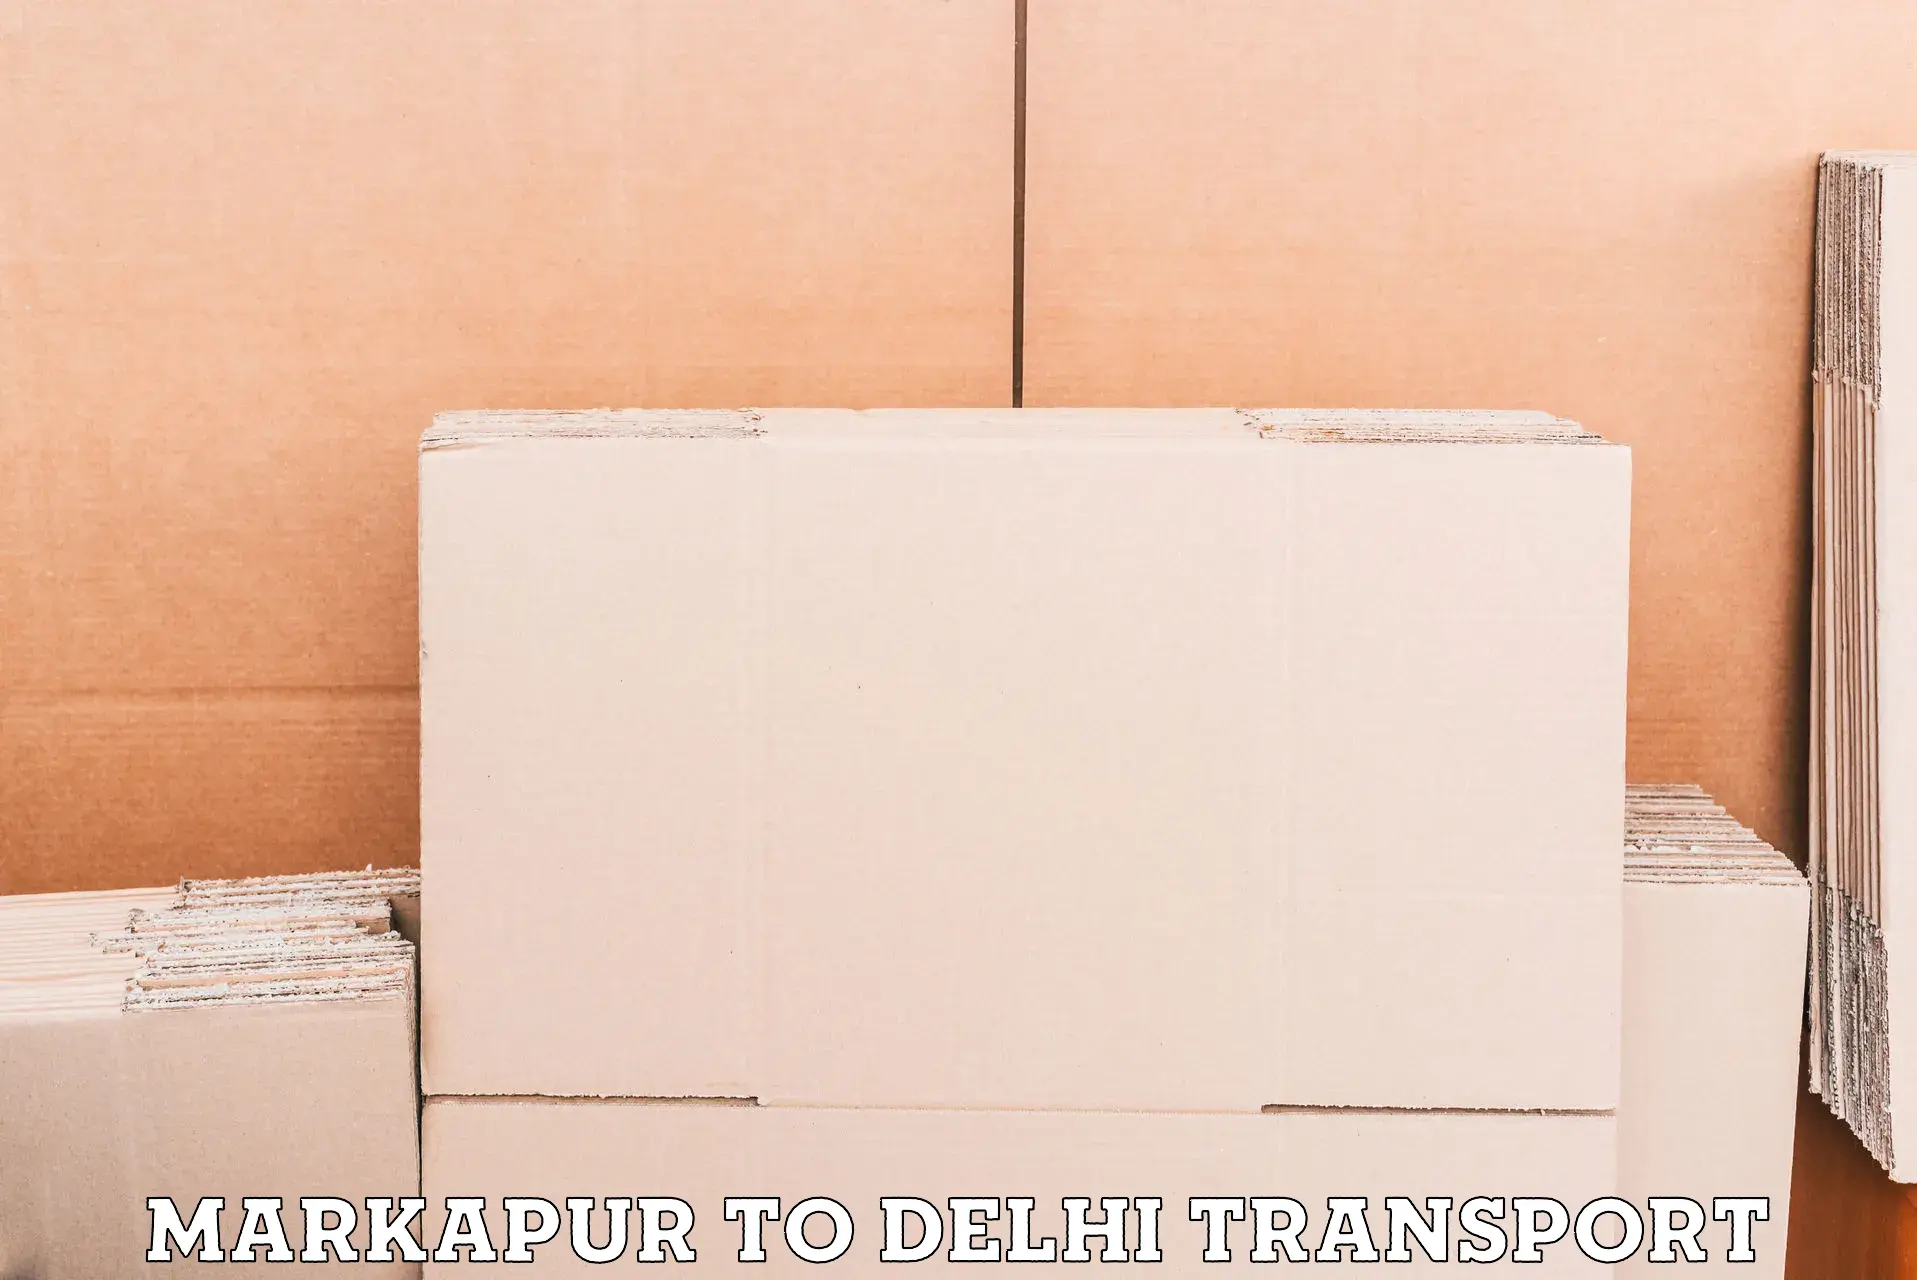 Interstate transport services Markapur to Delhi Technological University DTU